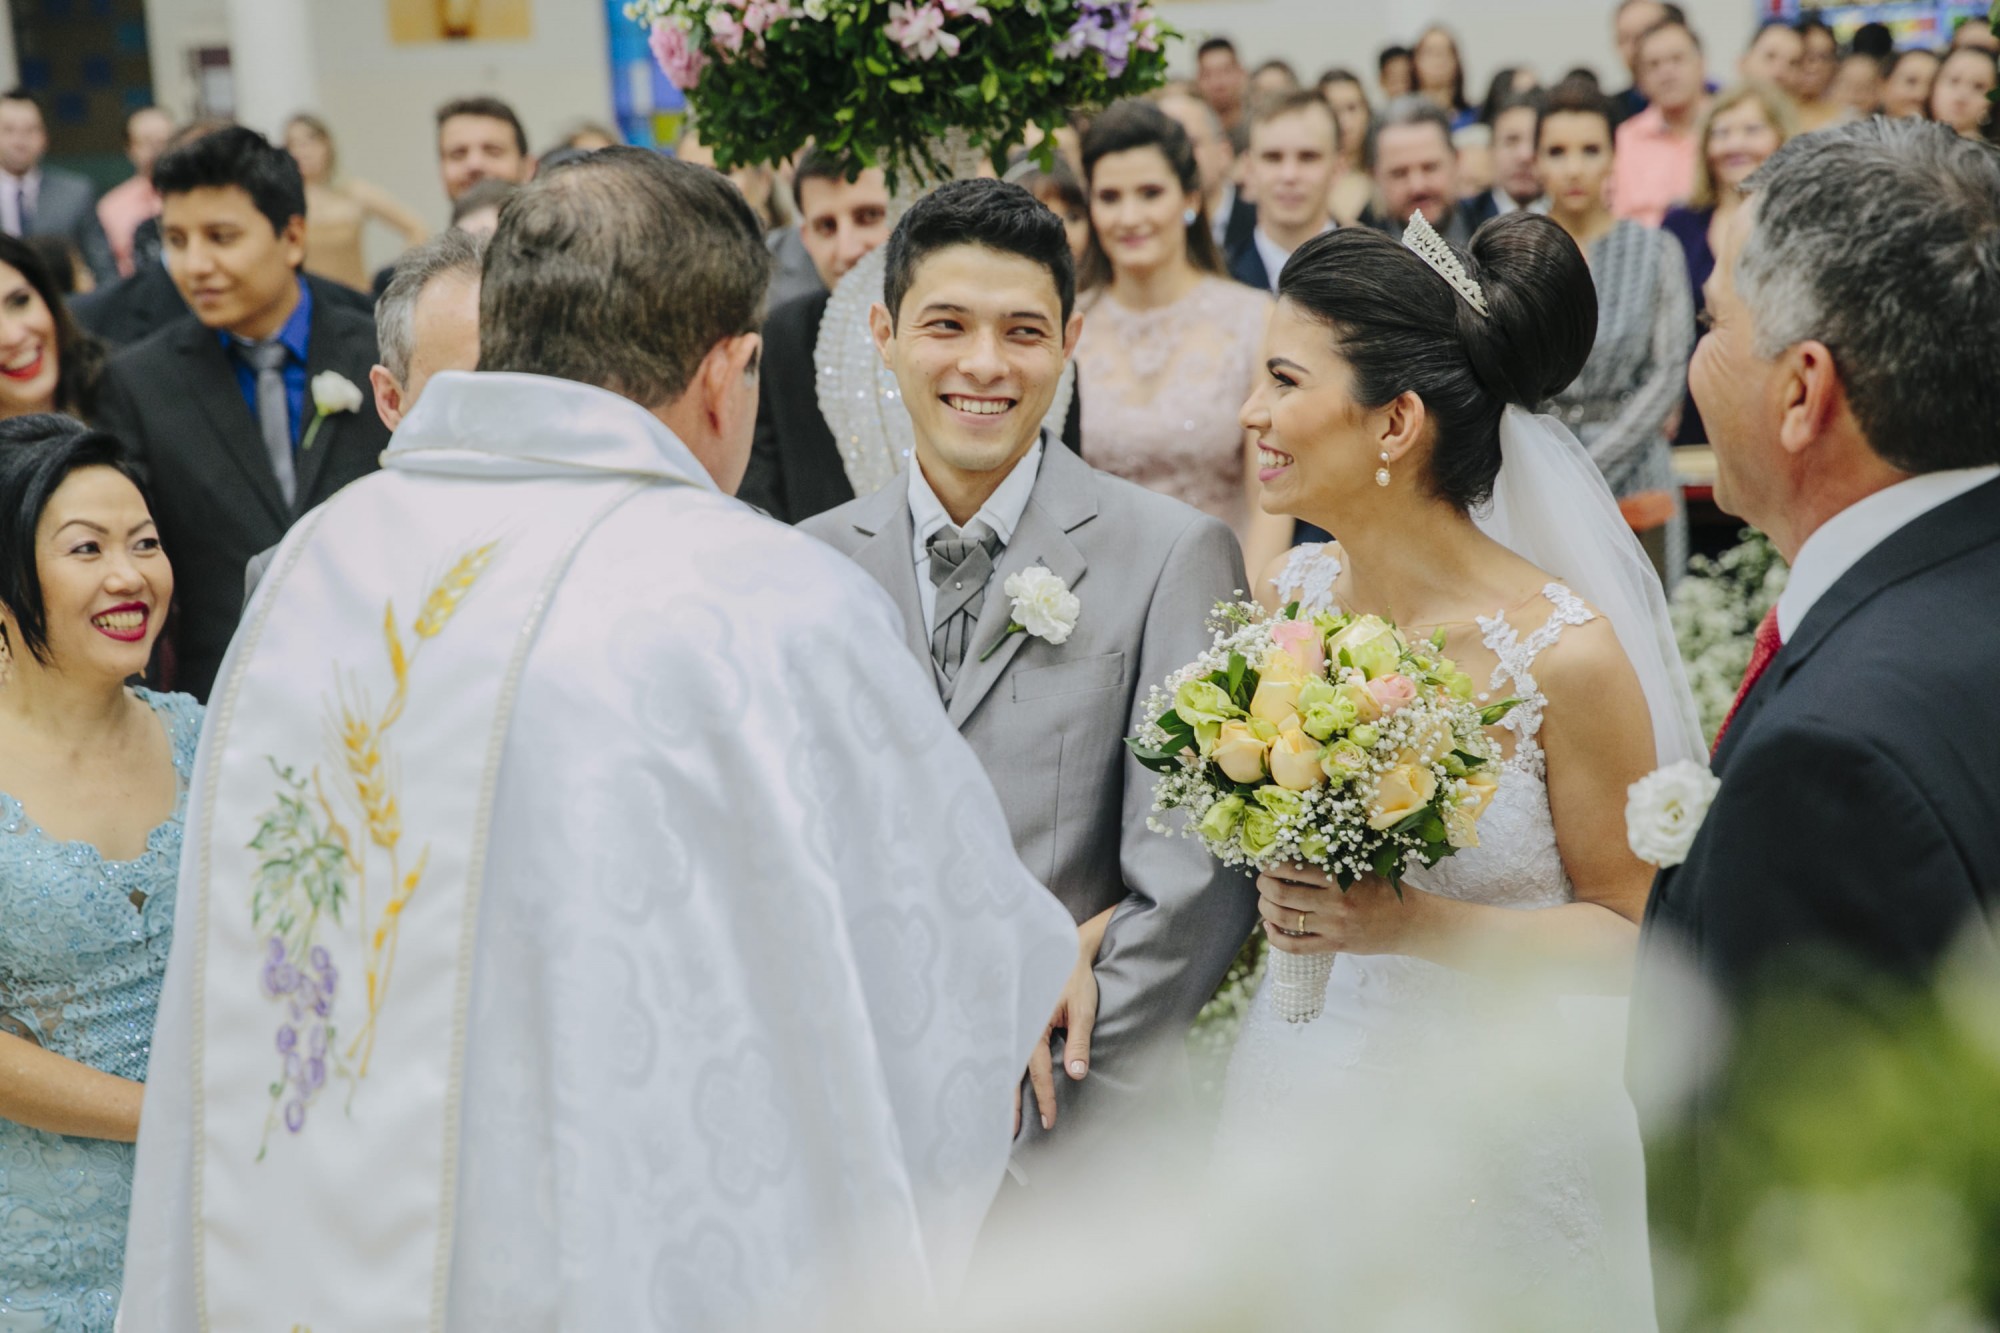 Casamento Camila Rampim e Rafael em Terra Roxa - Paraná - por Lorran Souza e Léia Sotile - fotografos de casamentos - 36